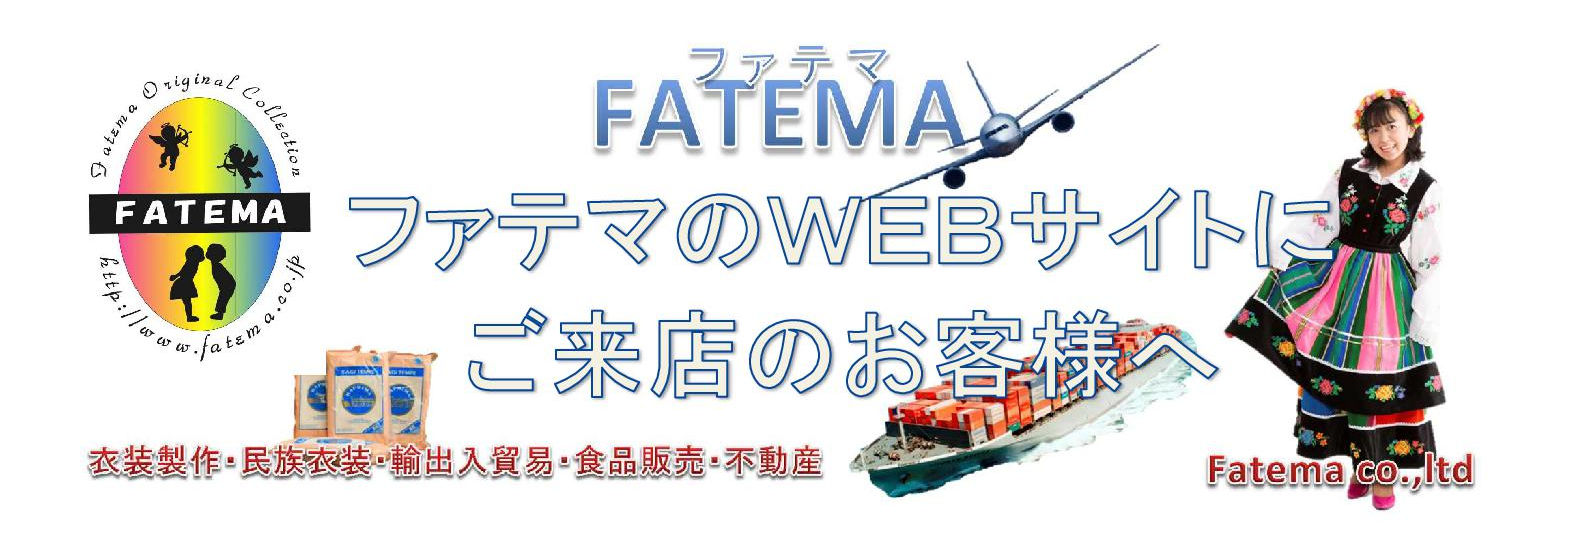 fatema ファテマに初めてご来店のお客様へ